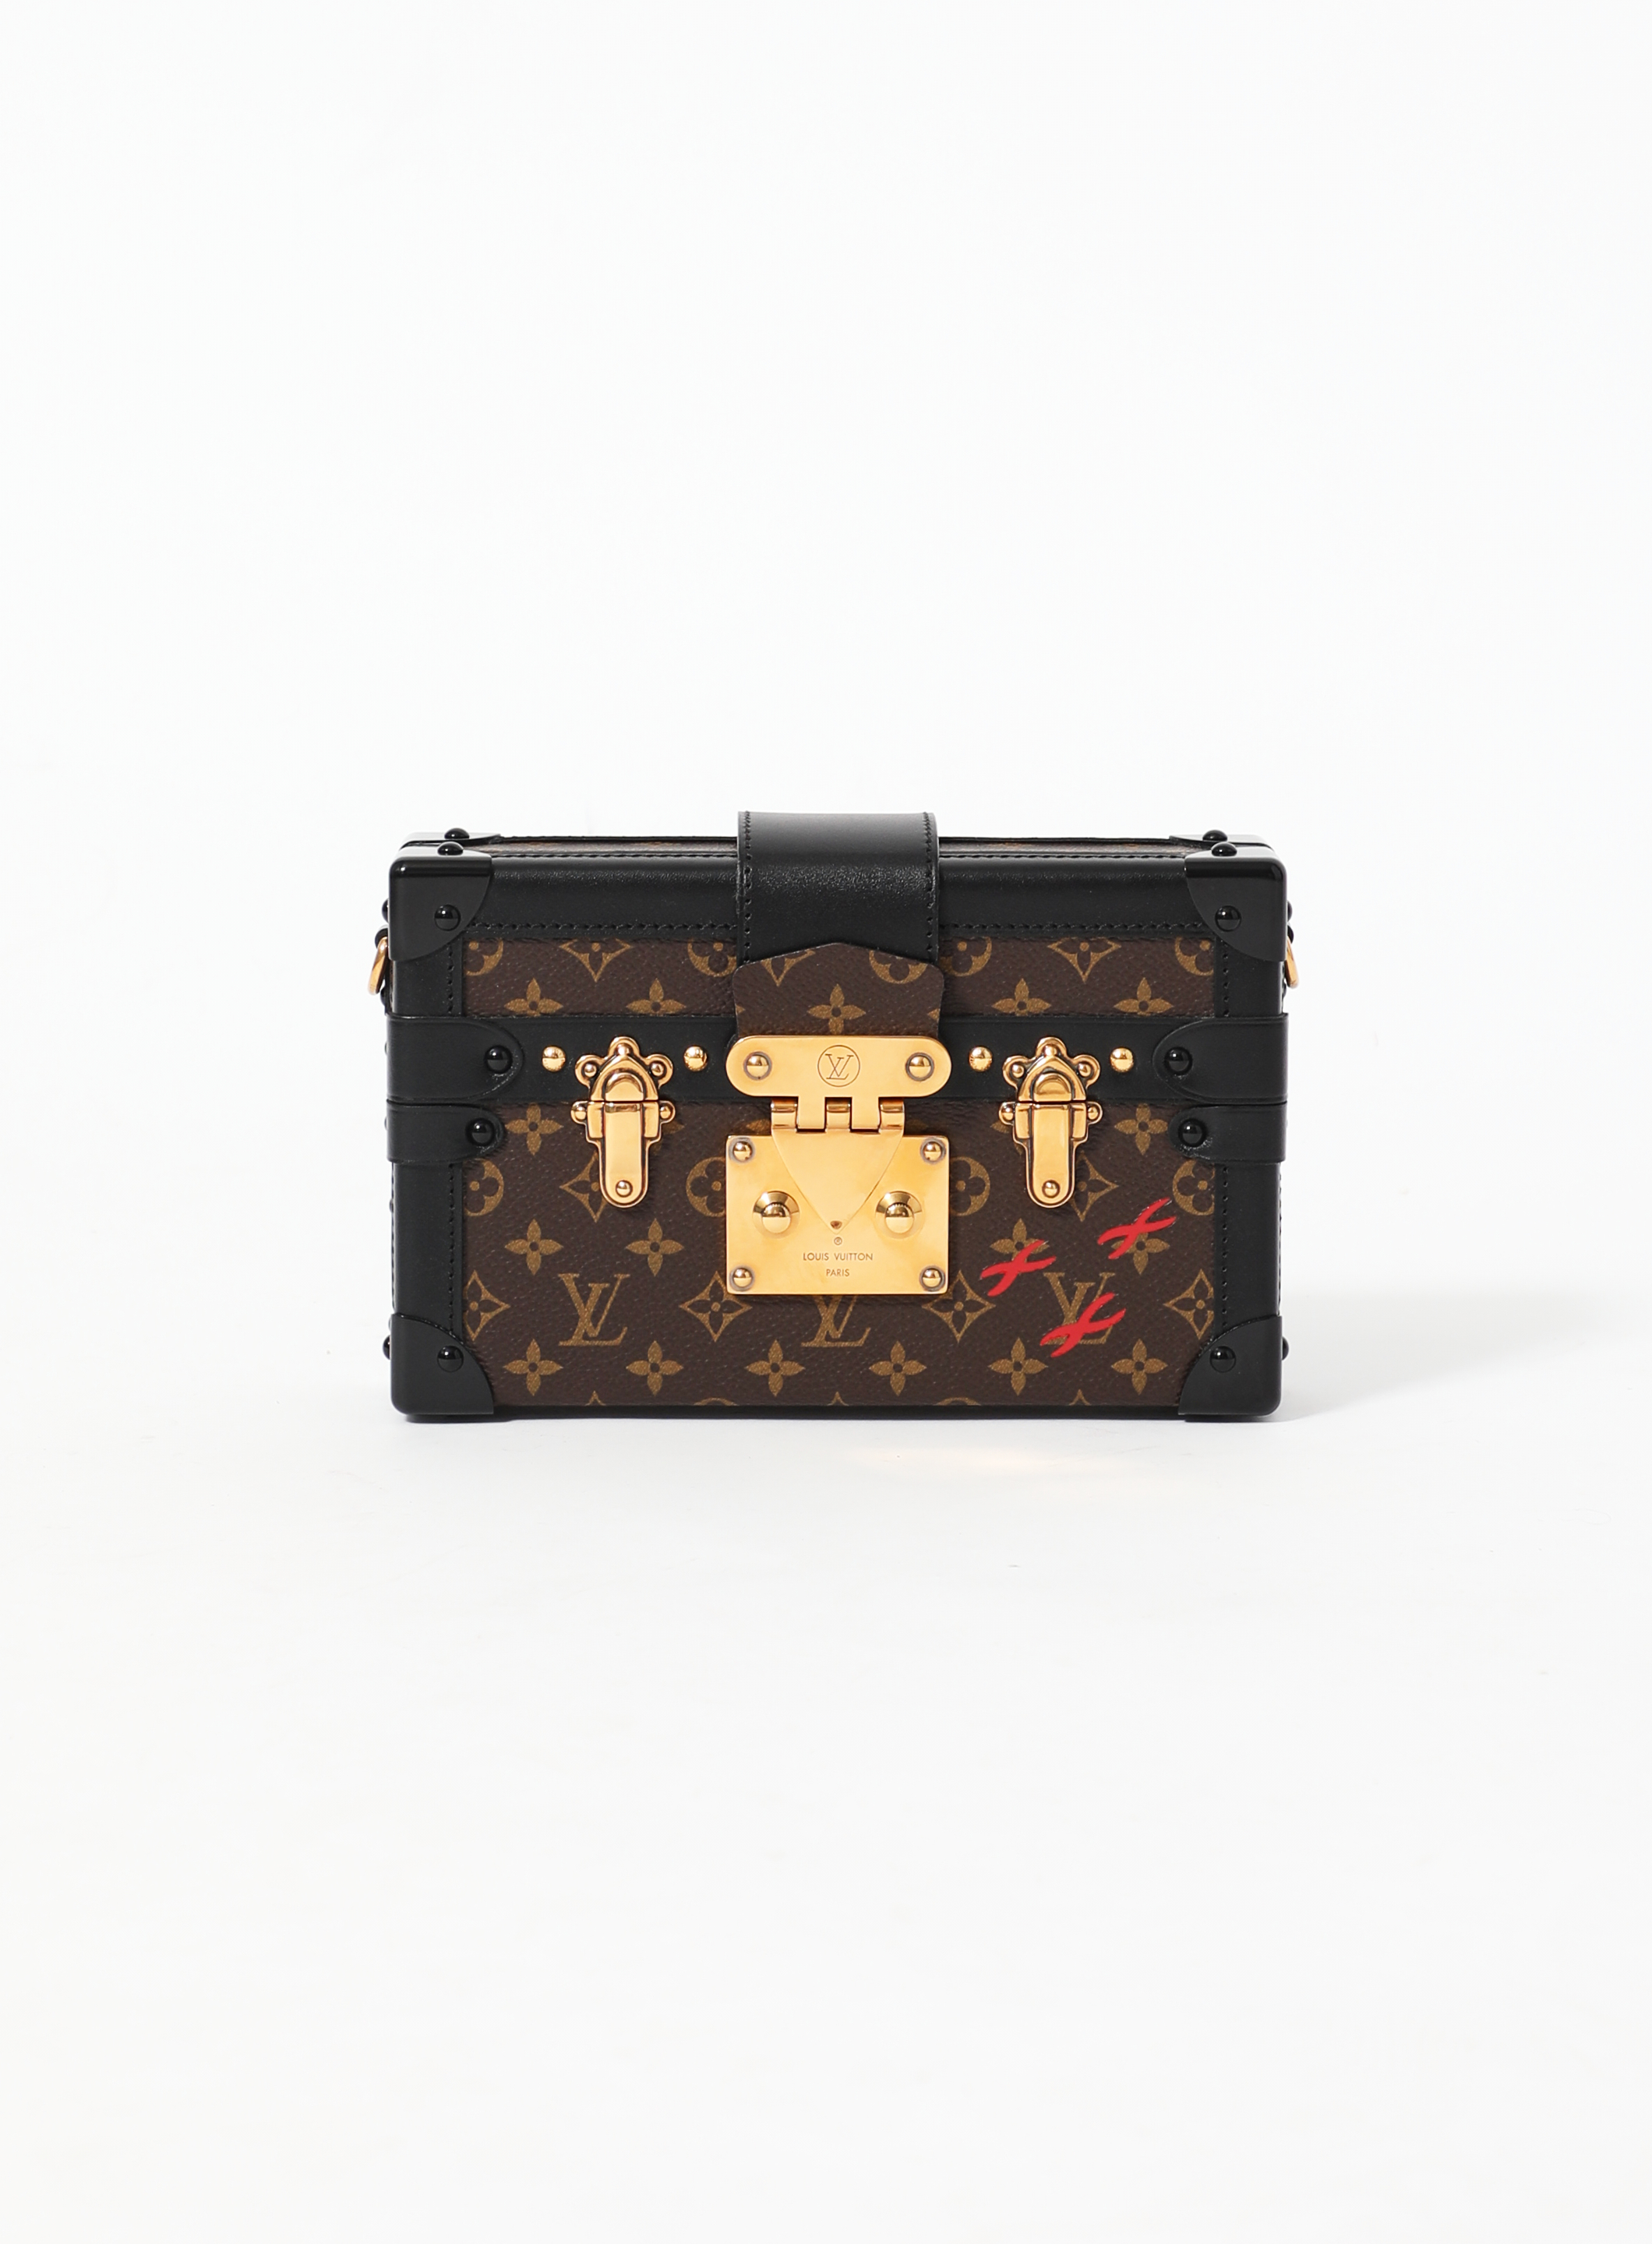 Petite Malle Bag Monogram Reverse Canvas - Handbags M45960 | LOUIS VUITTON